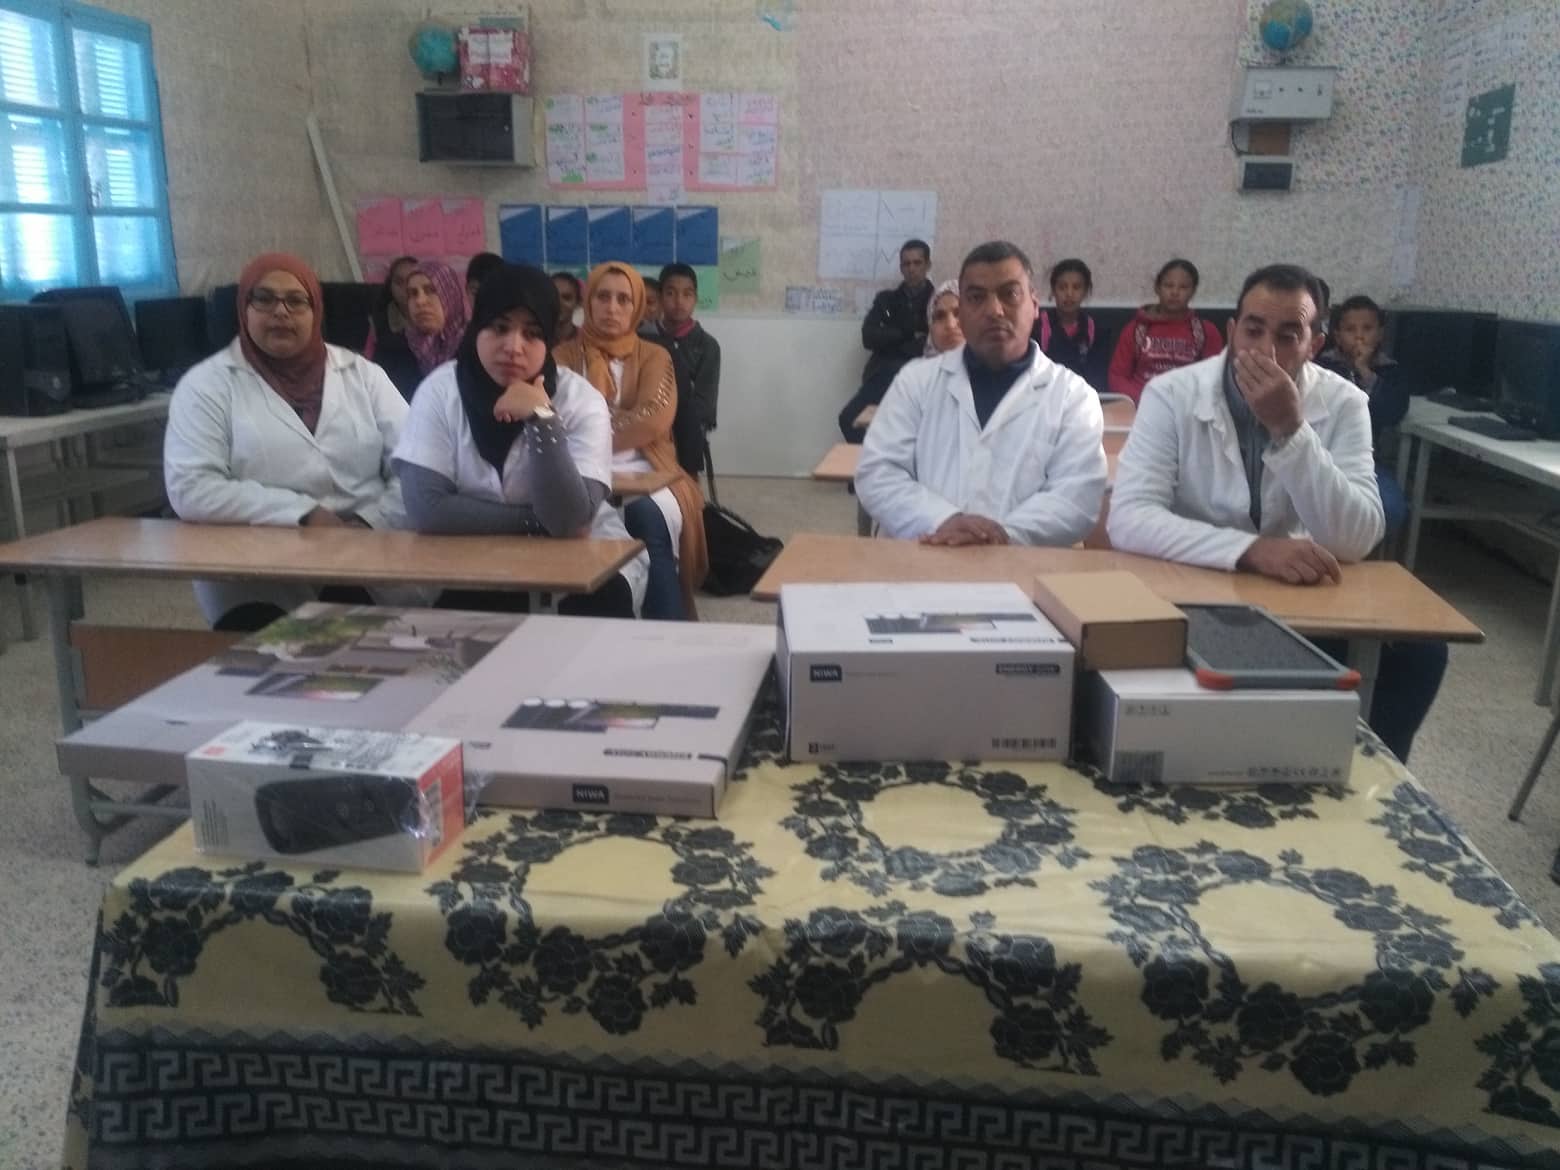 تركيز برنامج التربية الرقمية في خامس مدرسة ابتدائية في ولاية قابس منذ انطلاق المشروع المشترك بين وزارة التربية وأورنج تونس سنة 2014